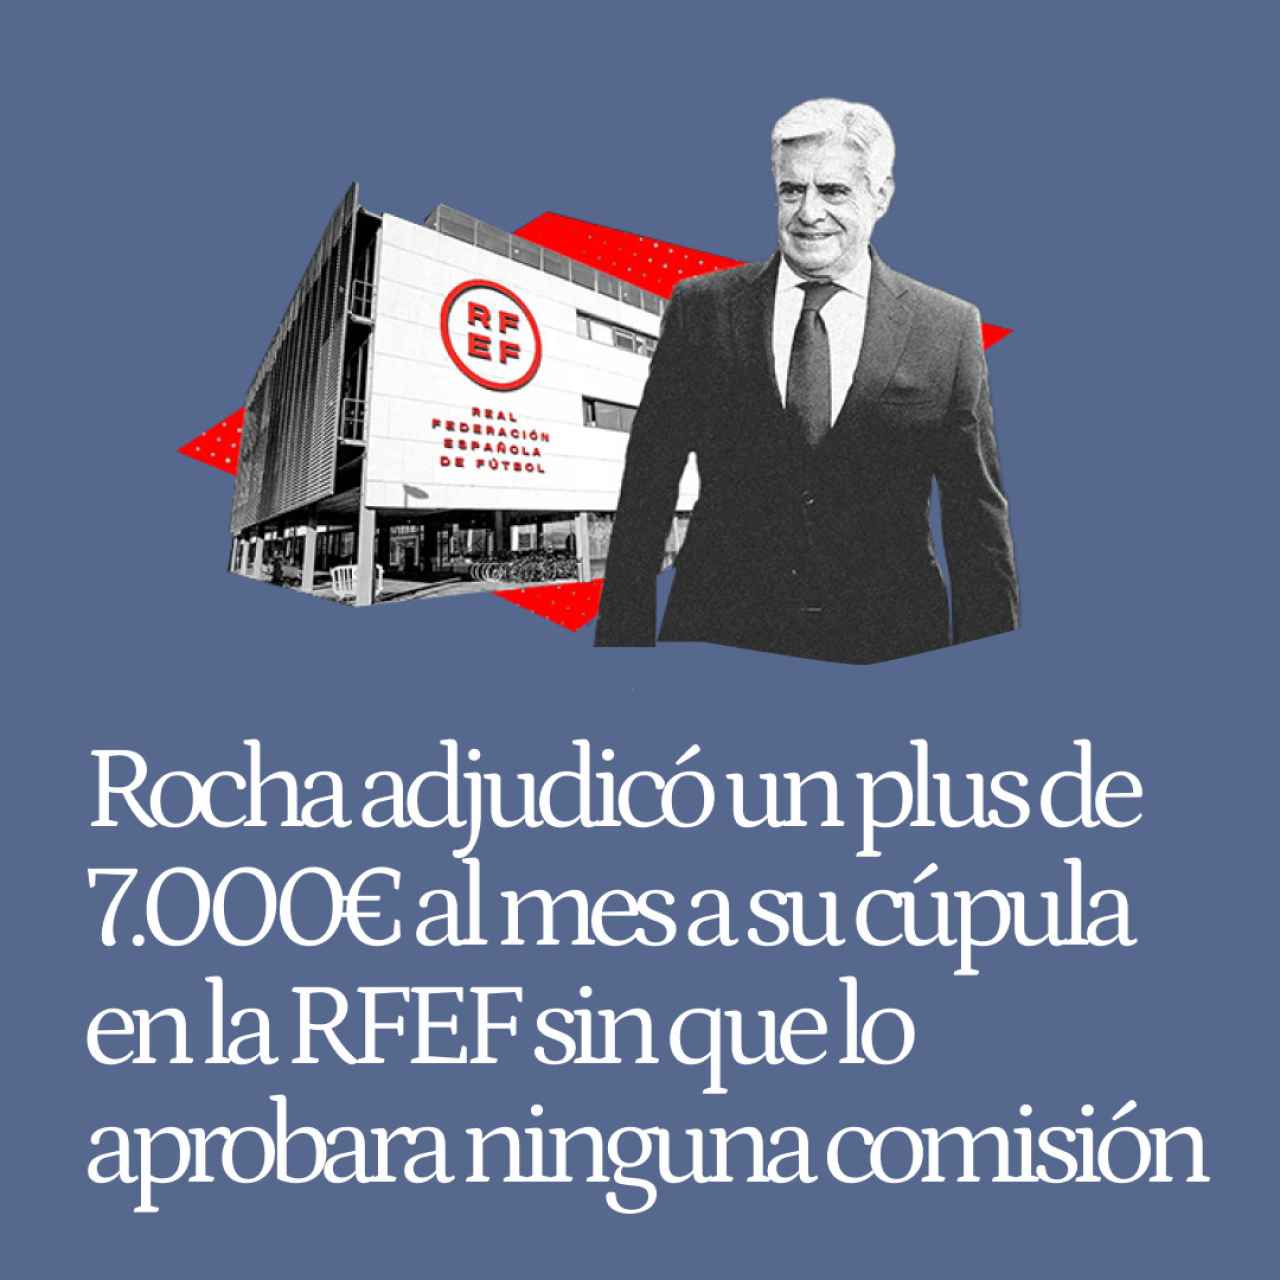 Rocha adjudicó un plus de 7.000€/mes a su cúpula en la RFEF sin ser aprobado por ninguna comisión